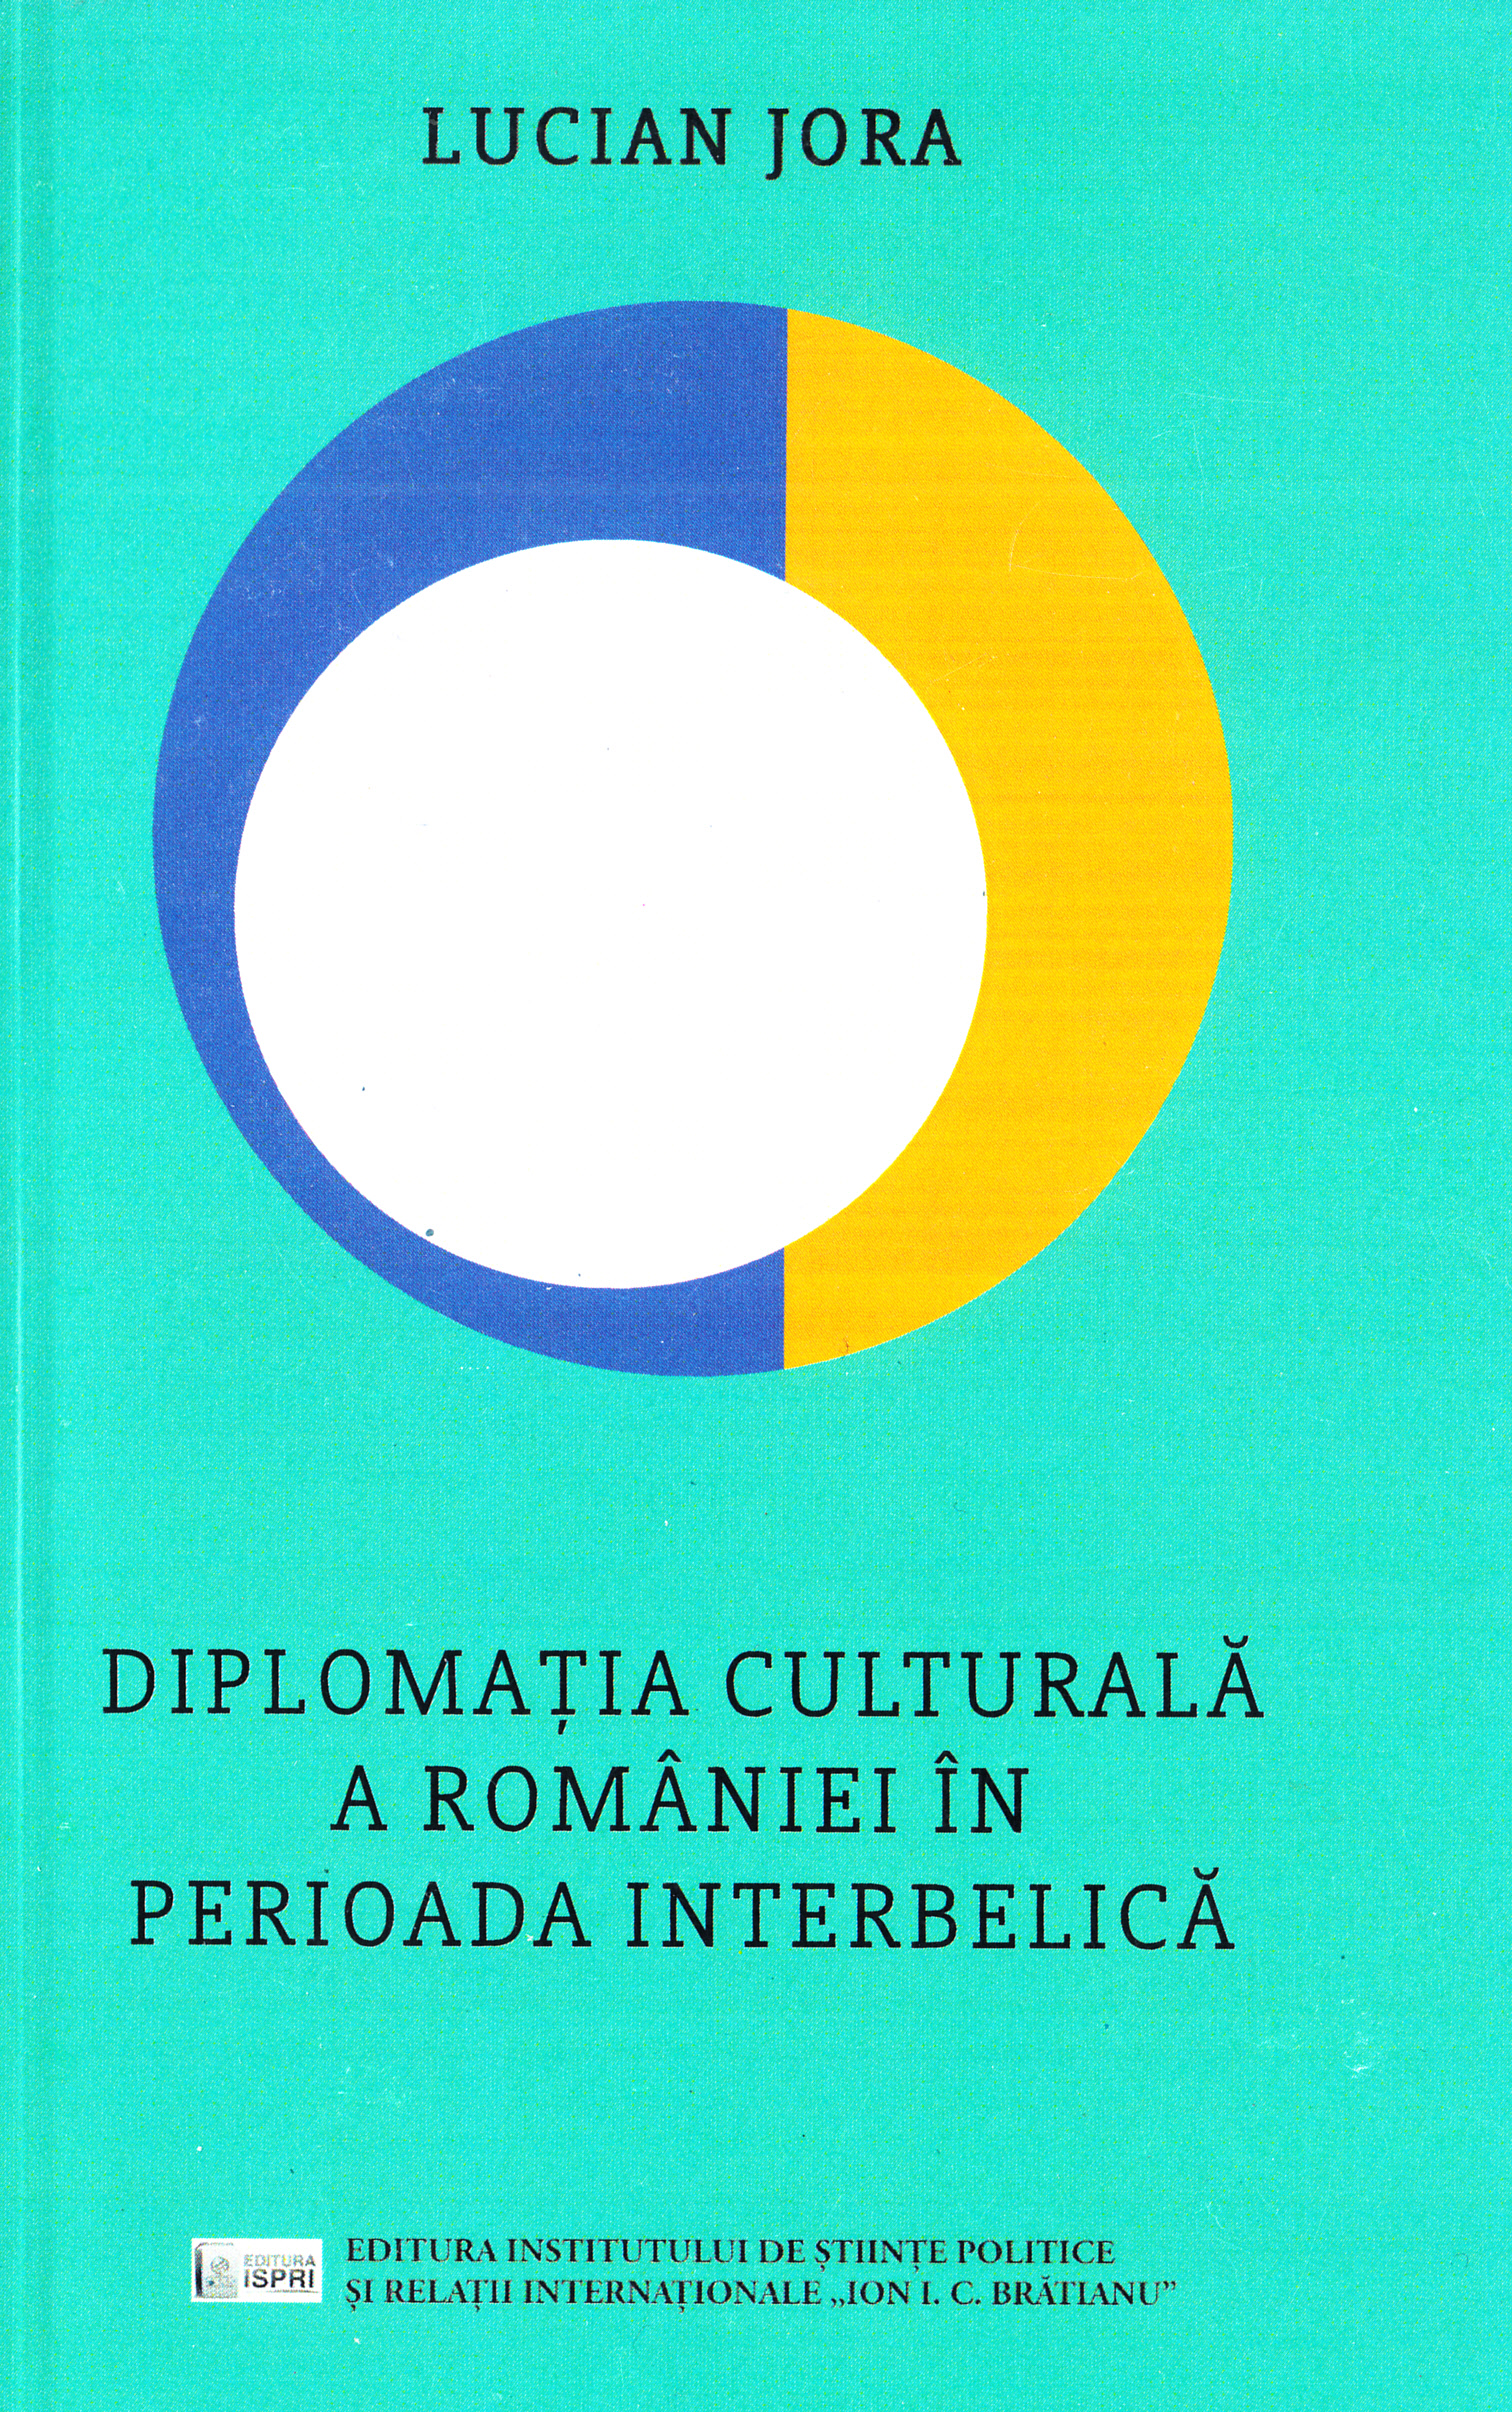 Diplomatia culturala a Romaniei in perioada interbelica - Lucian Jora